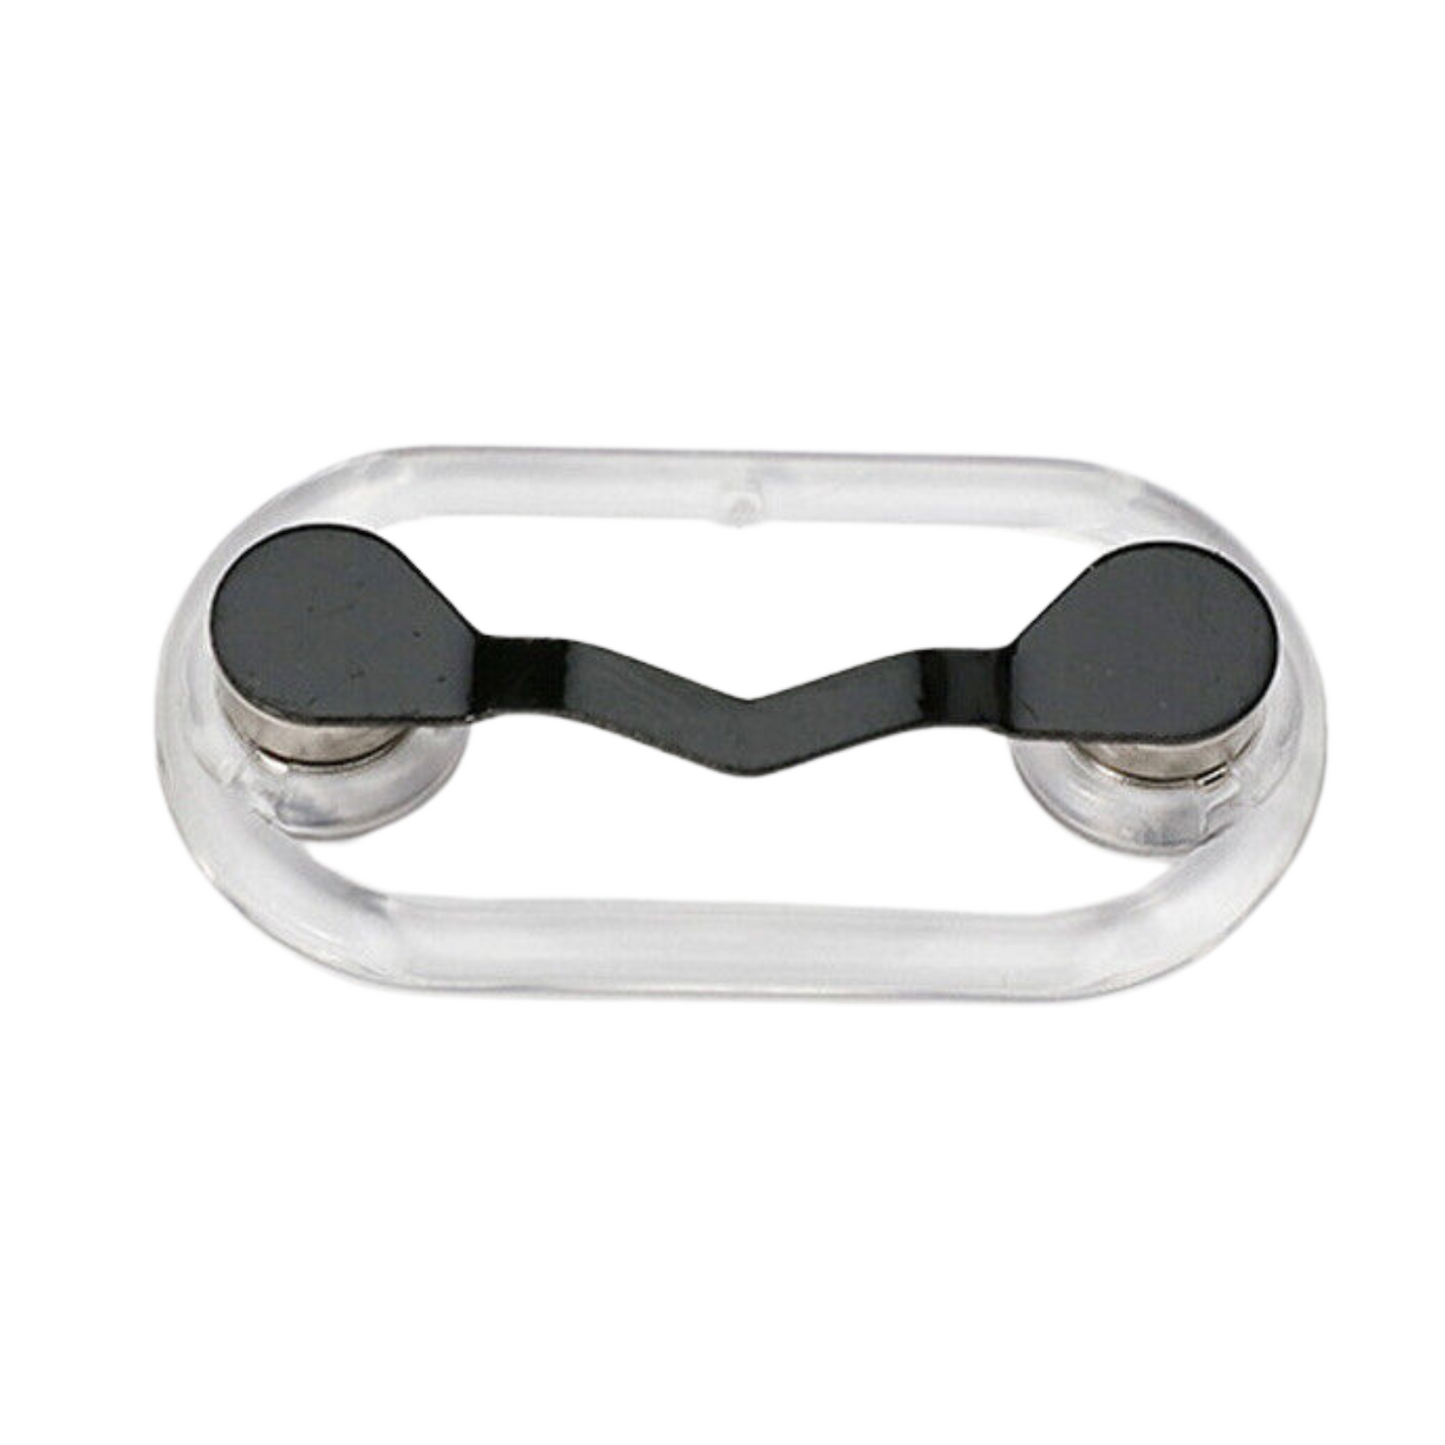 Sunglasses Clip Hang Hook Magnetic Eye Glasses Holder Magnet Eyeglass Black